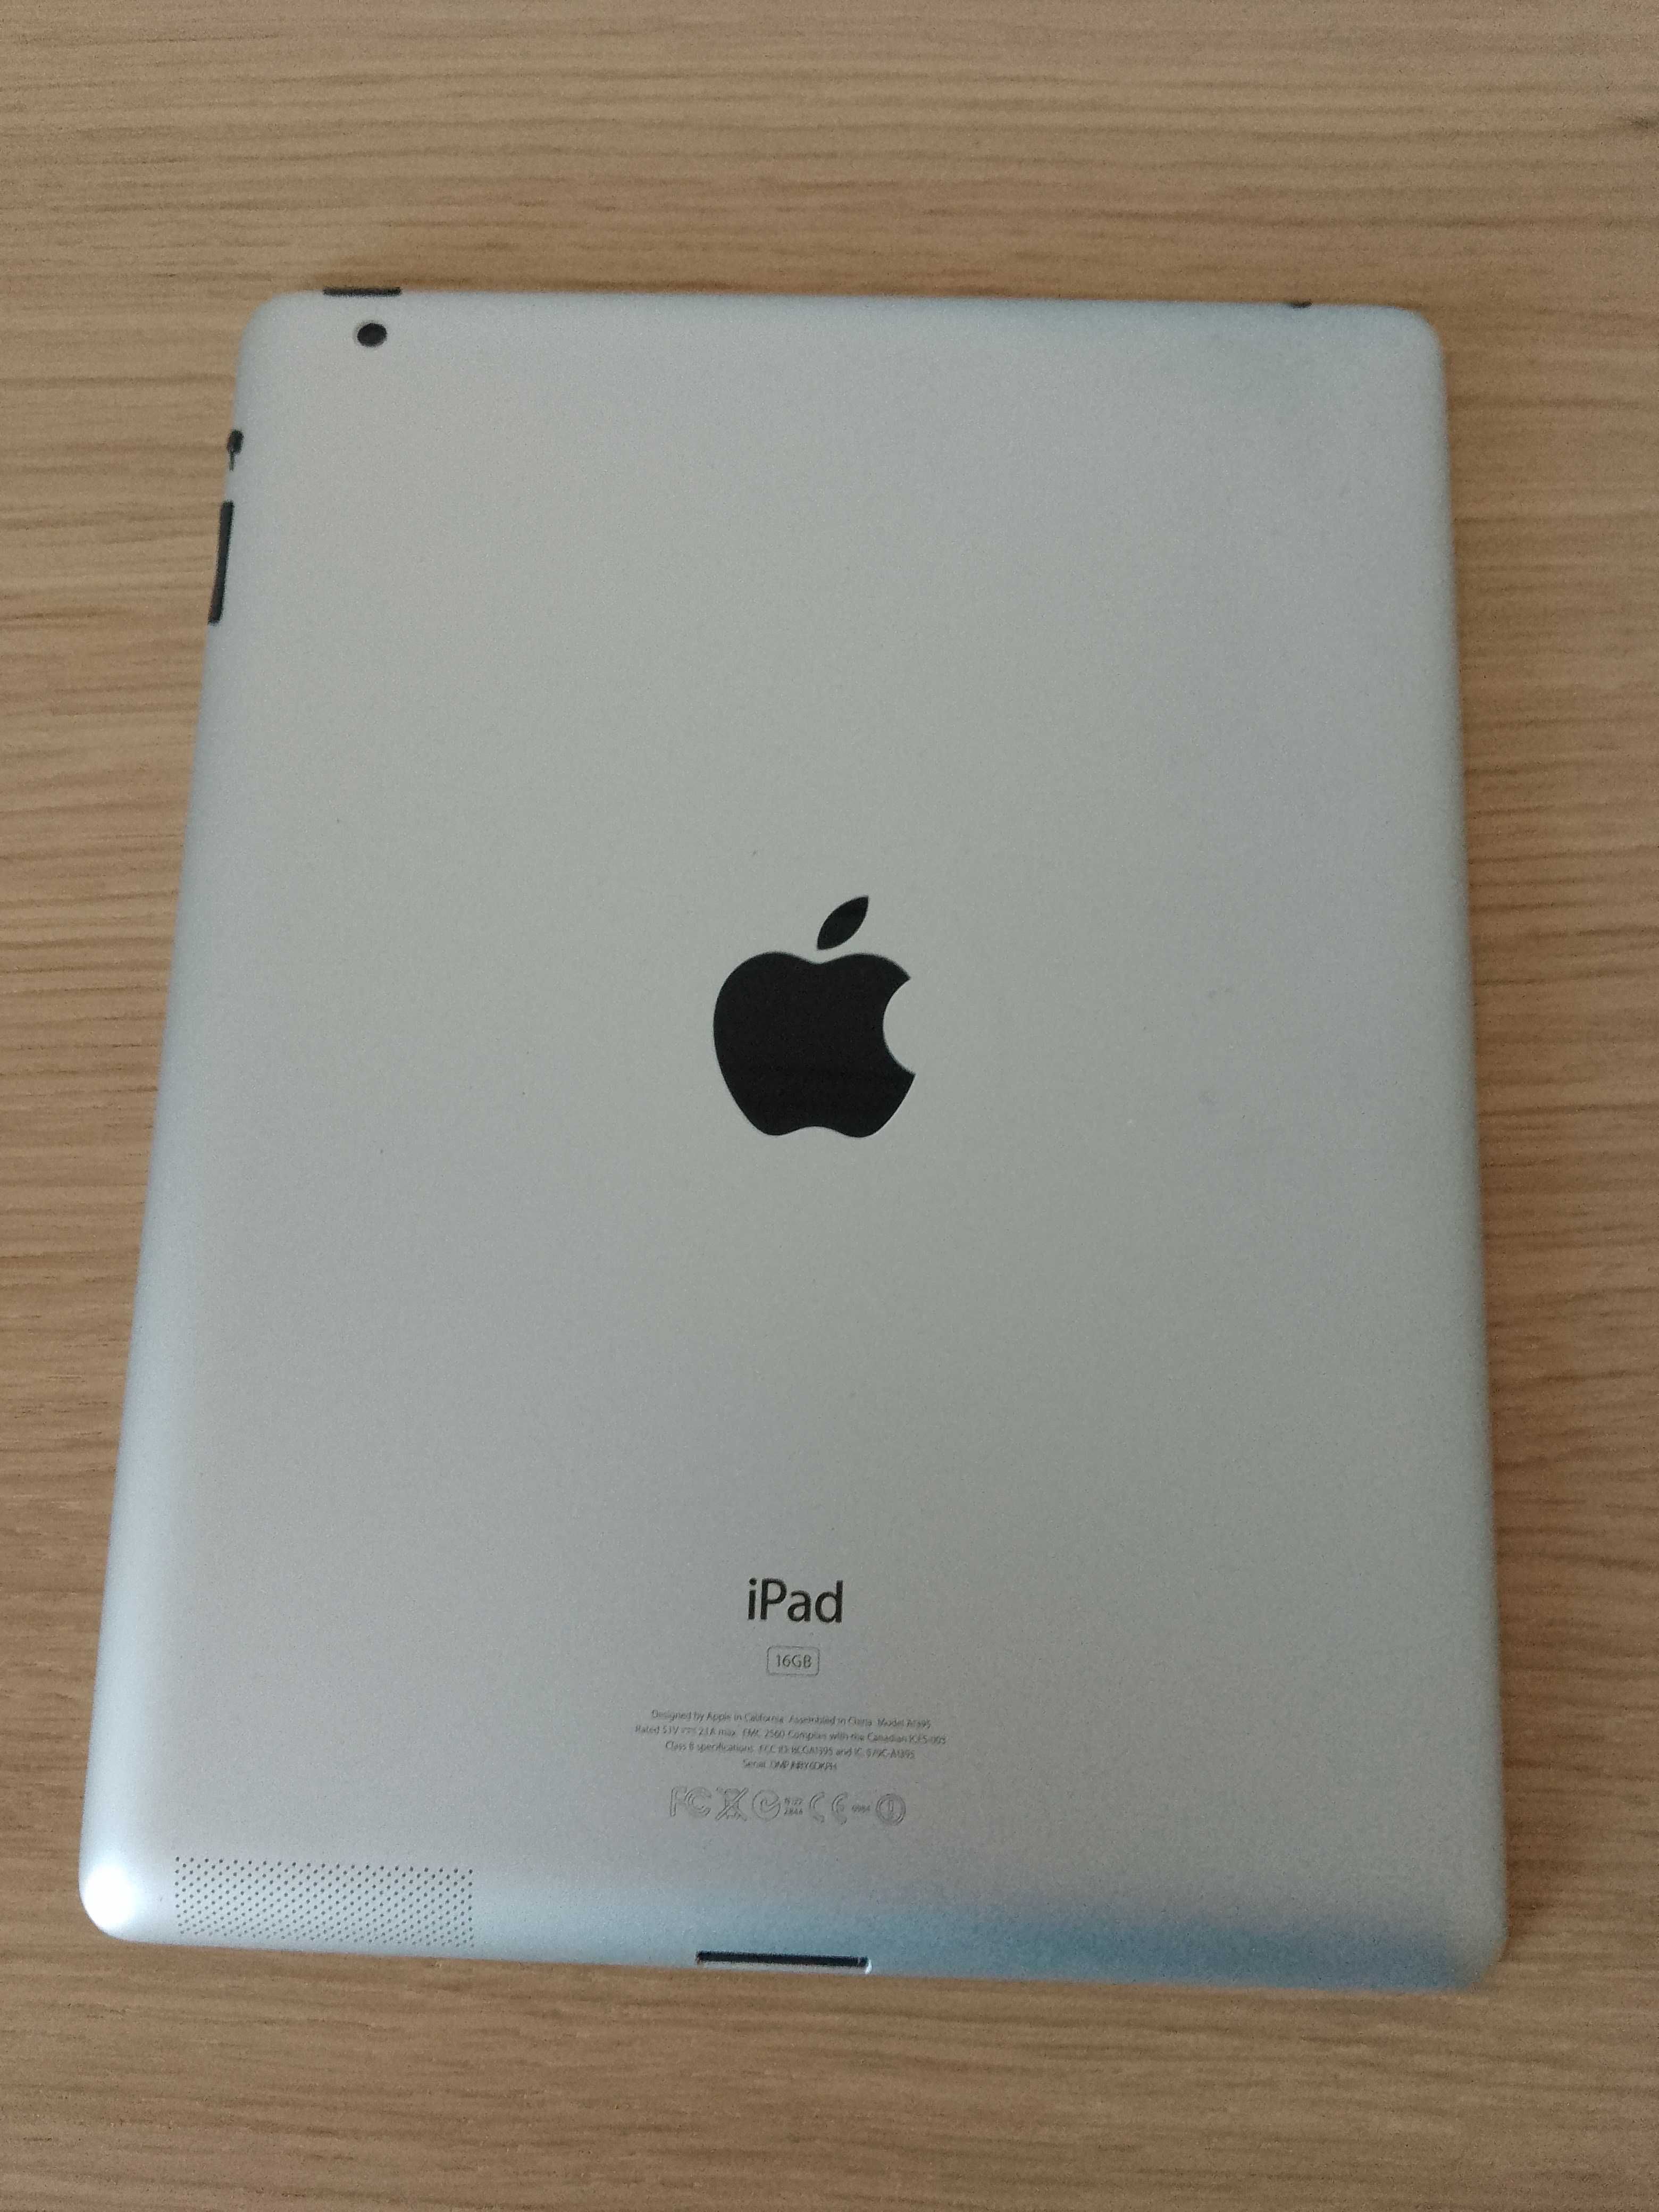 iPad 16GB A1395 Apple